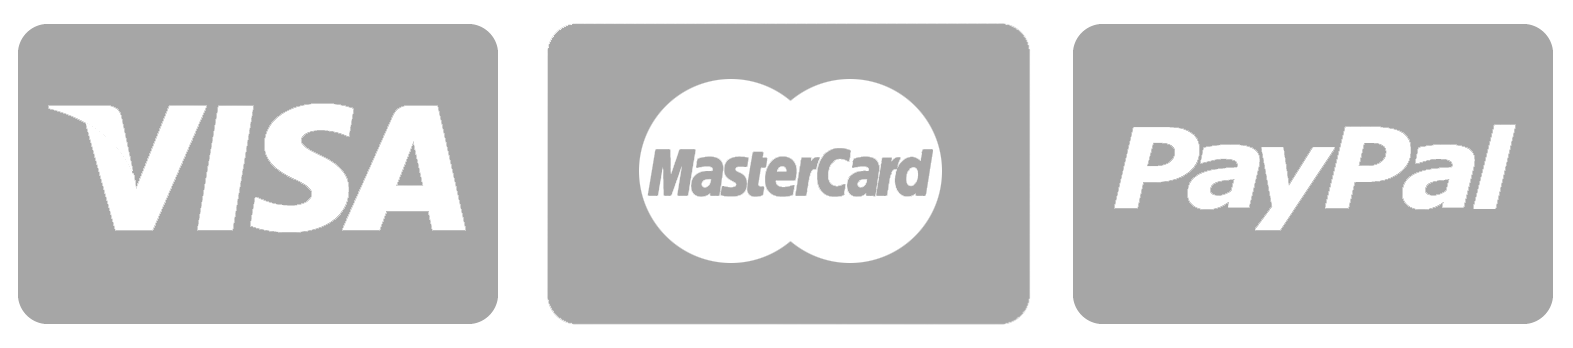 Visa MasterCard Logo - visa-mastercard-paypal - Hitlanders